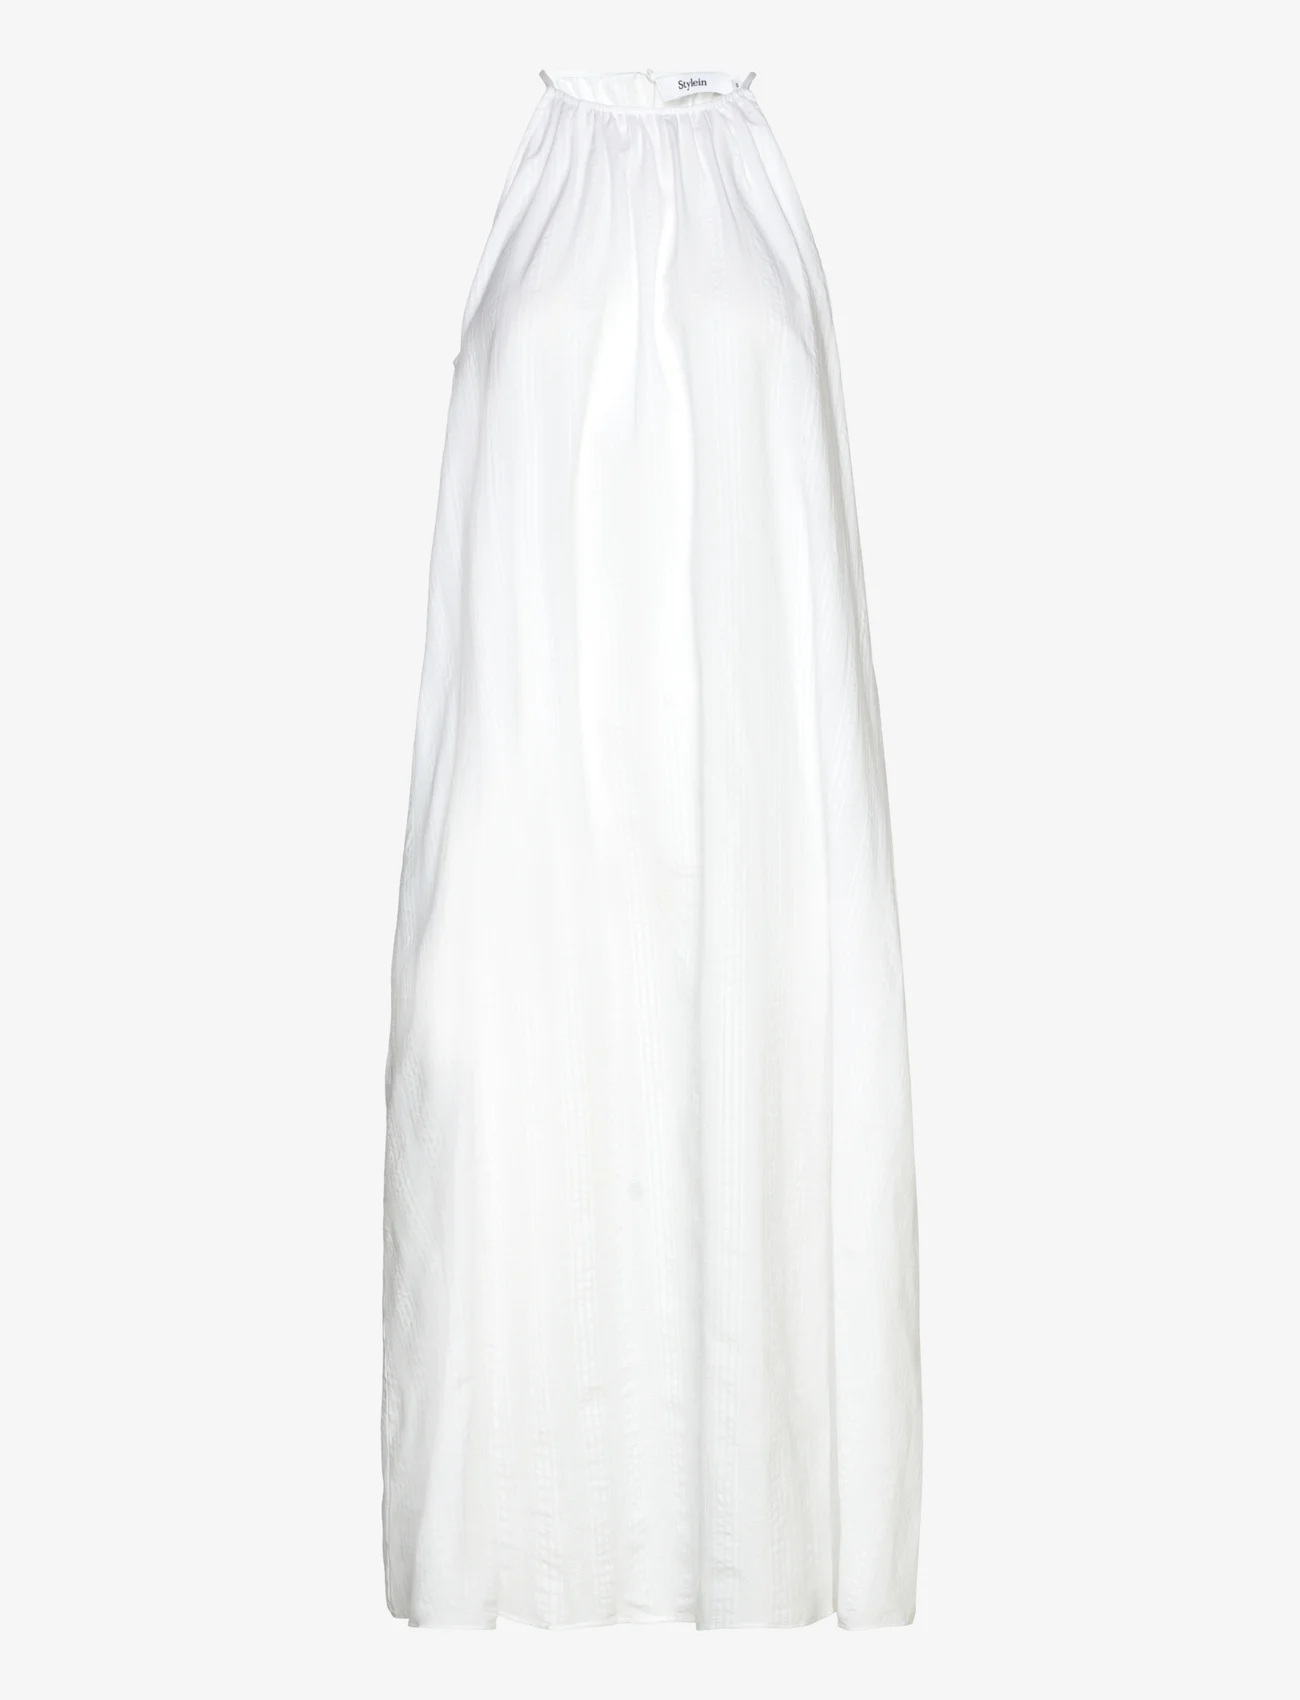 Stylein - JARDIN DRESS - white - 0